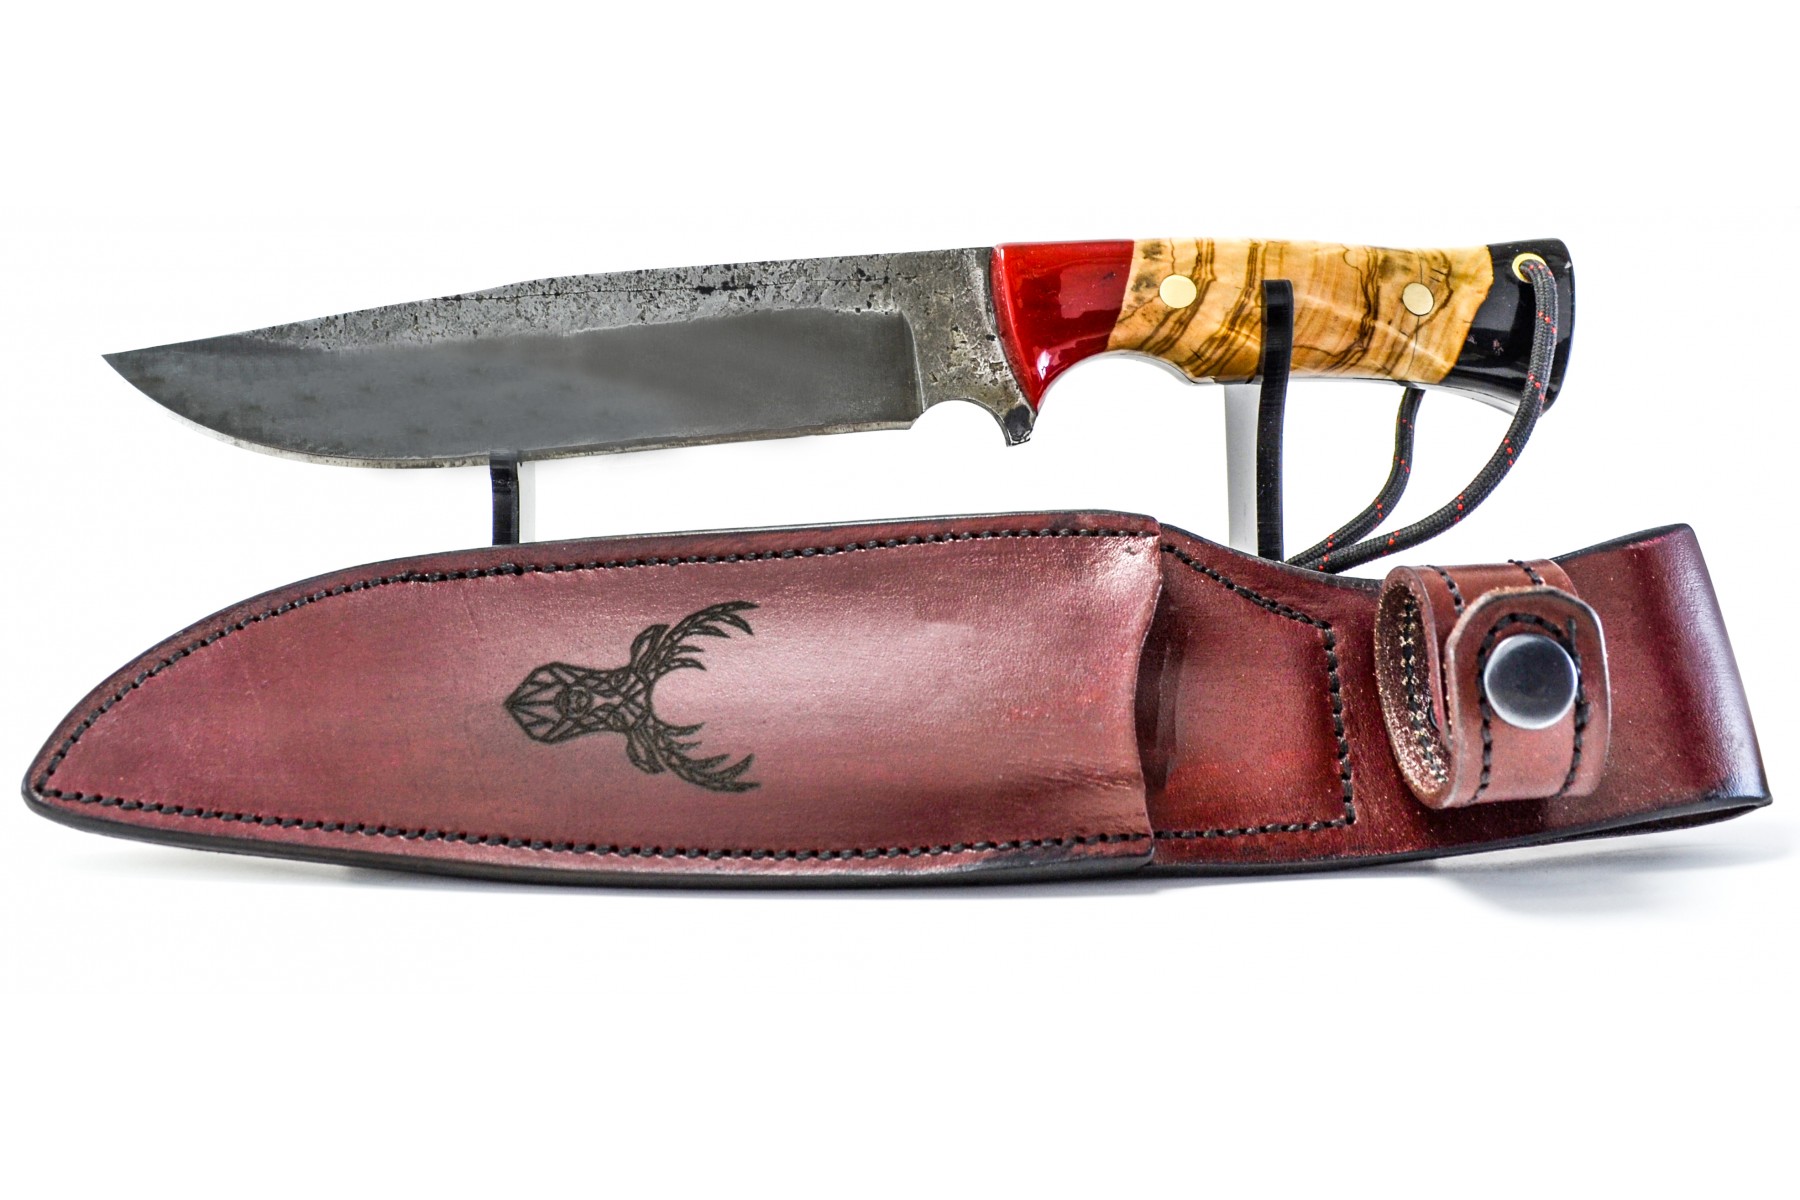 Dövme yay çeliği av bıçağı kutu, stant ve kılıf hediyeli